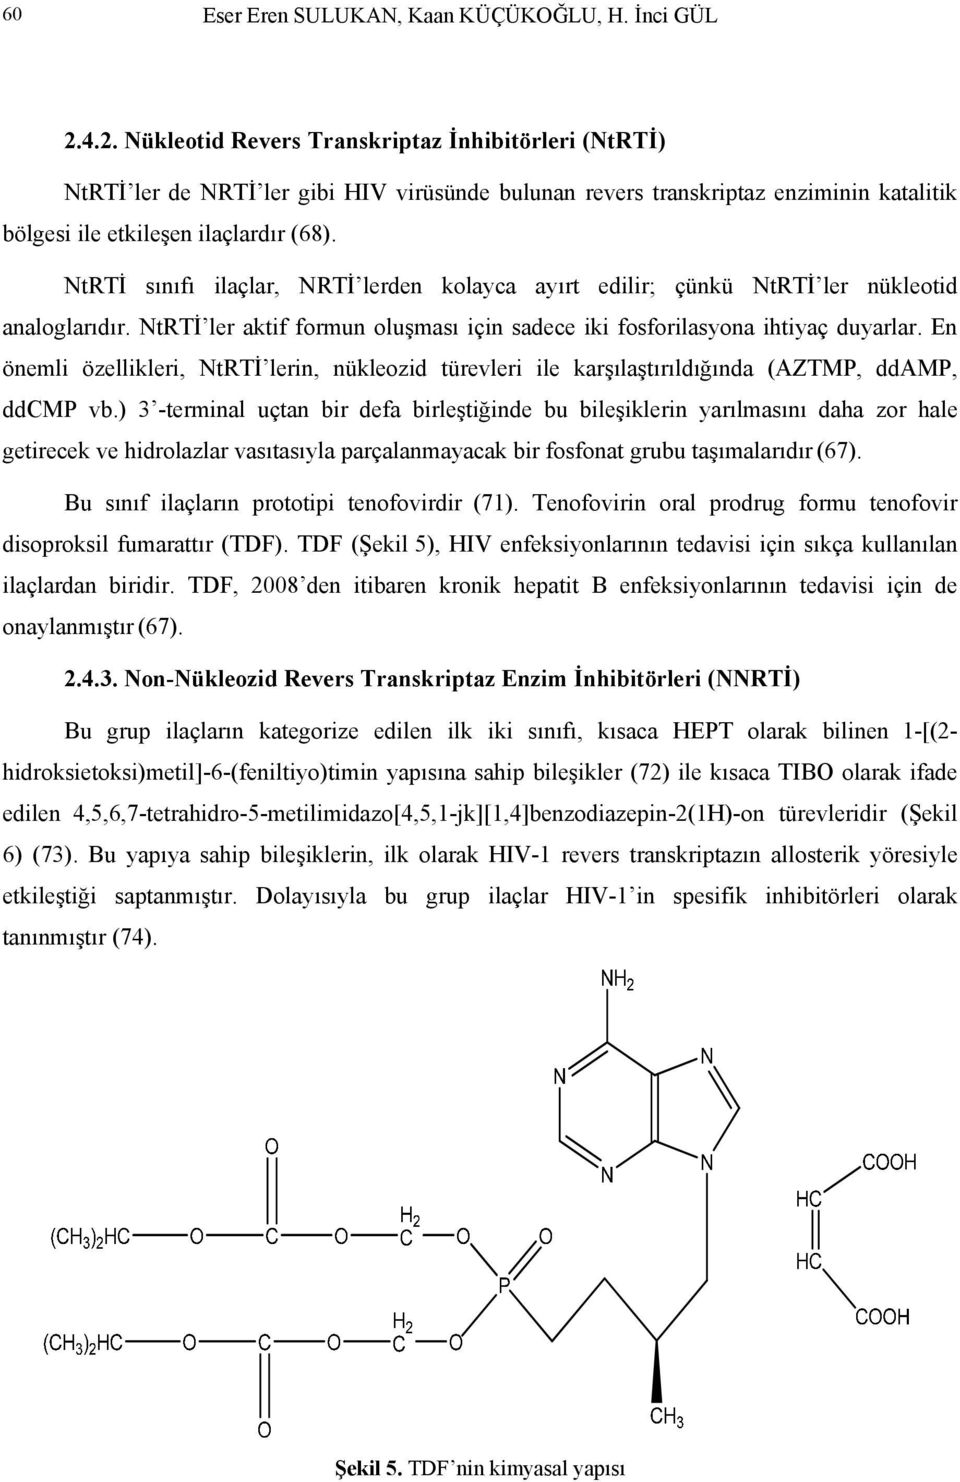 trti sınıfı ilaçlar, RTİ lerden kolayca ayırt edilir; çünkü trti ler nükleotid analoglarıdır. trti ler aktif formun oluşması için sadece iki fosforilasyona ihtiyaç duyarlar.